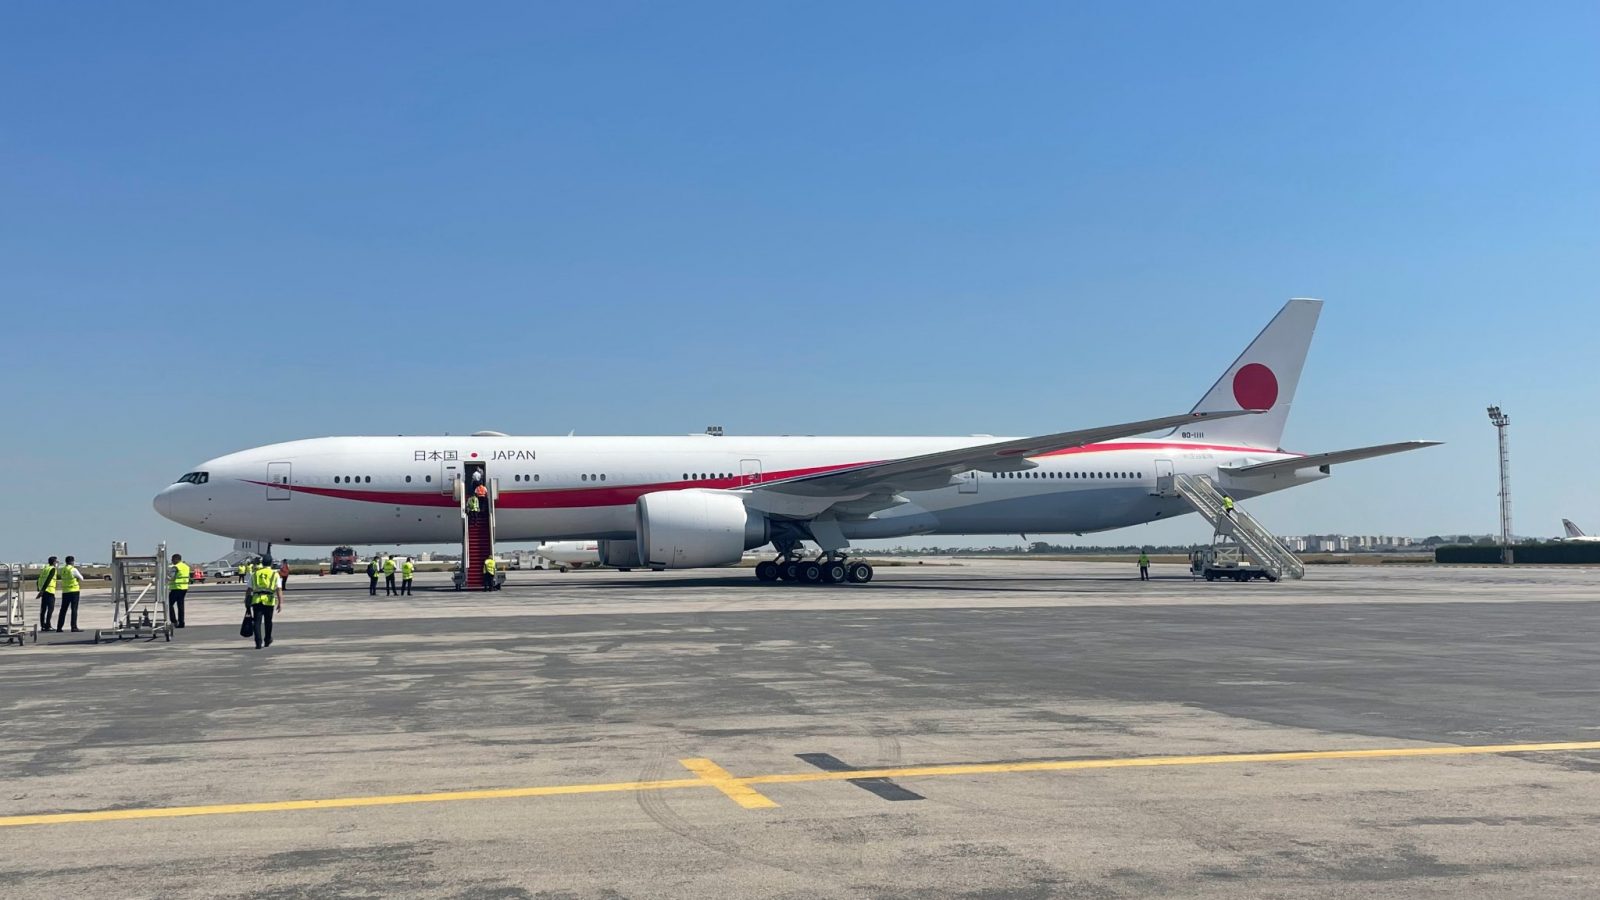 الطائرة الخاصة للحكومة اليابانية تحل بمطار تونس قرطاج